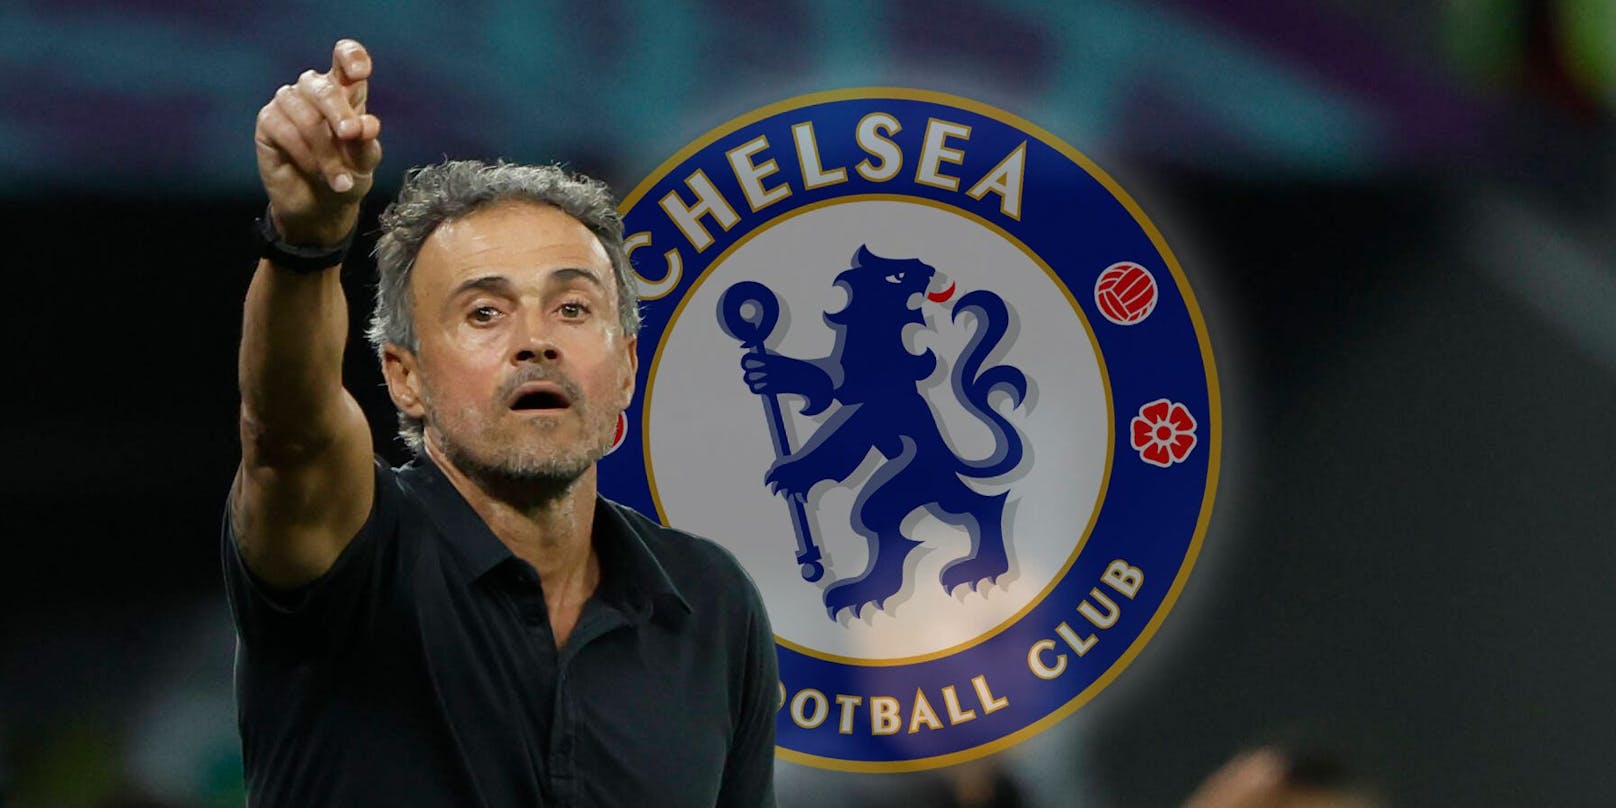 Nach Nagelsmann nächster Star-Coach auf Chelsea-Liste